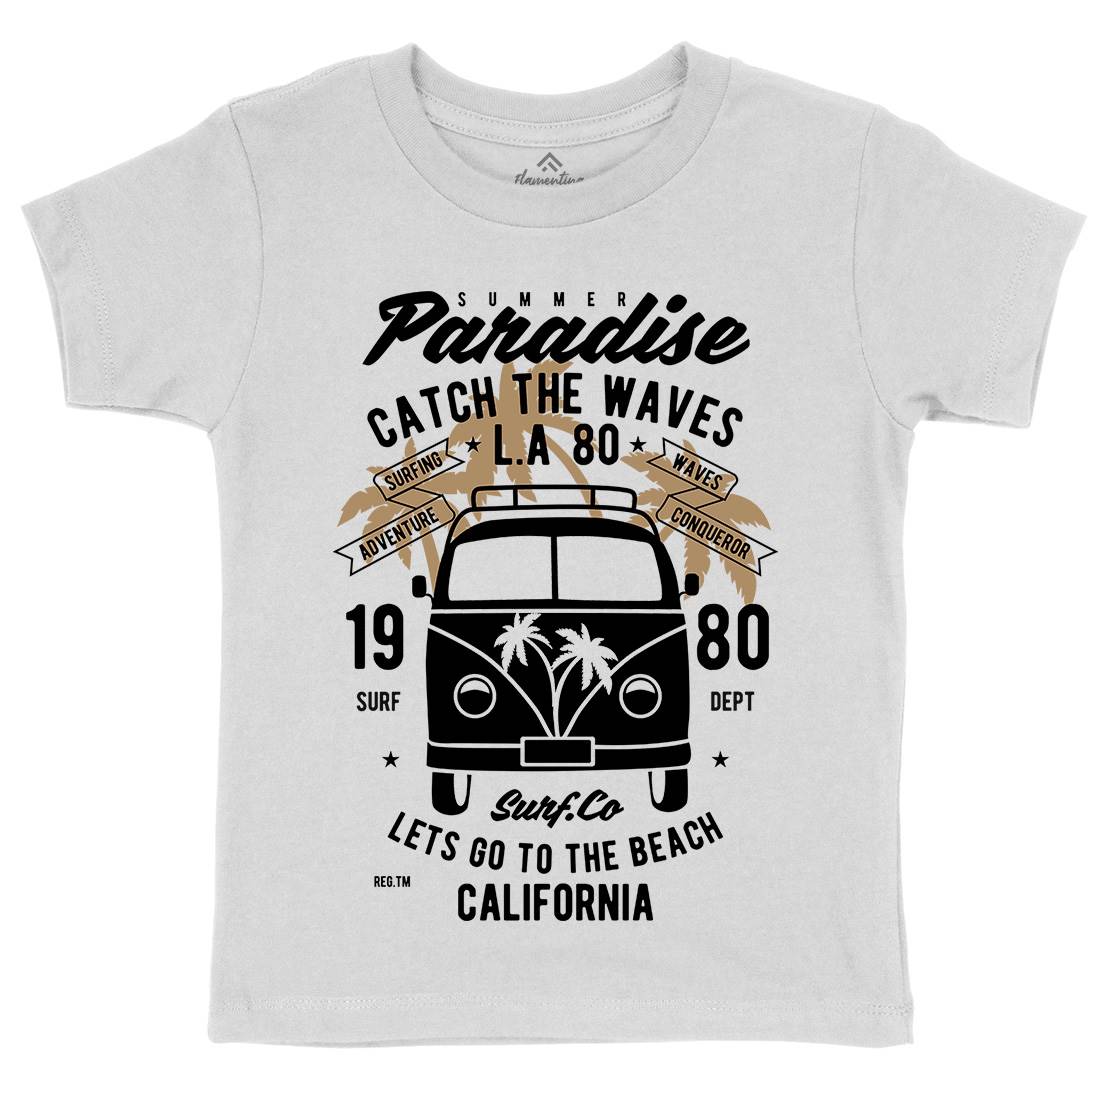 Catch The Waves Surfing Van Kids Crew Neck T-Shirt Surf B393